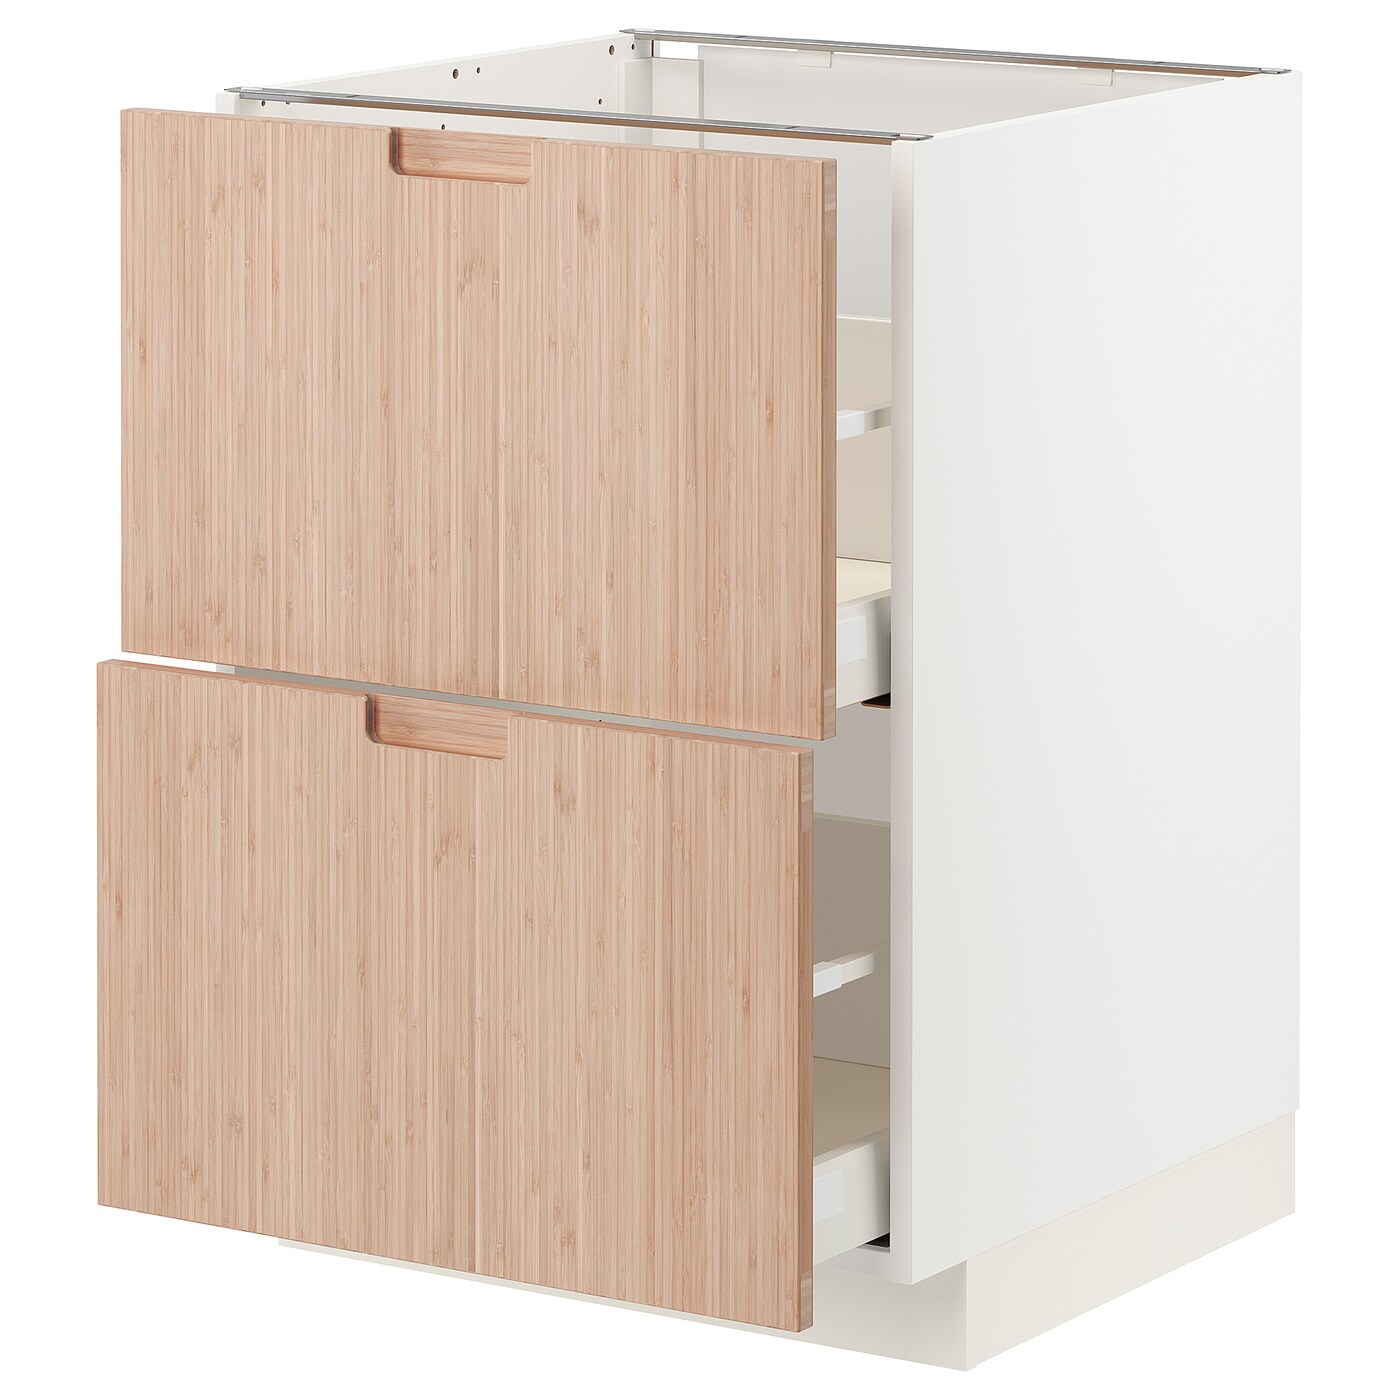 Напольный кухонный шкаф  - IKEA METOD MAXIMERA, 88x61,6x60см, белый/светло-коричневый, МЕТОД МАКСИМЕРА ИКЕА